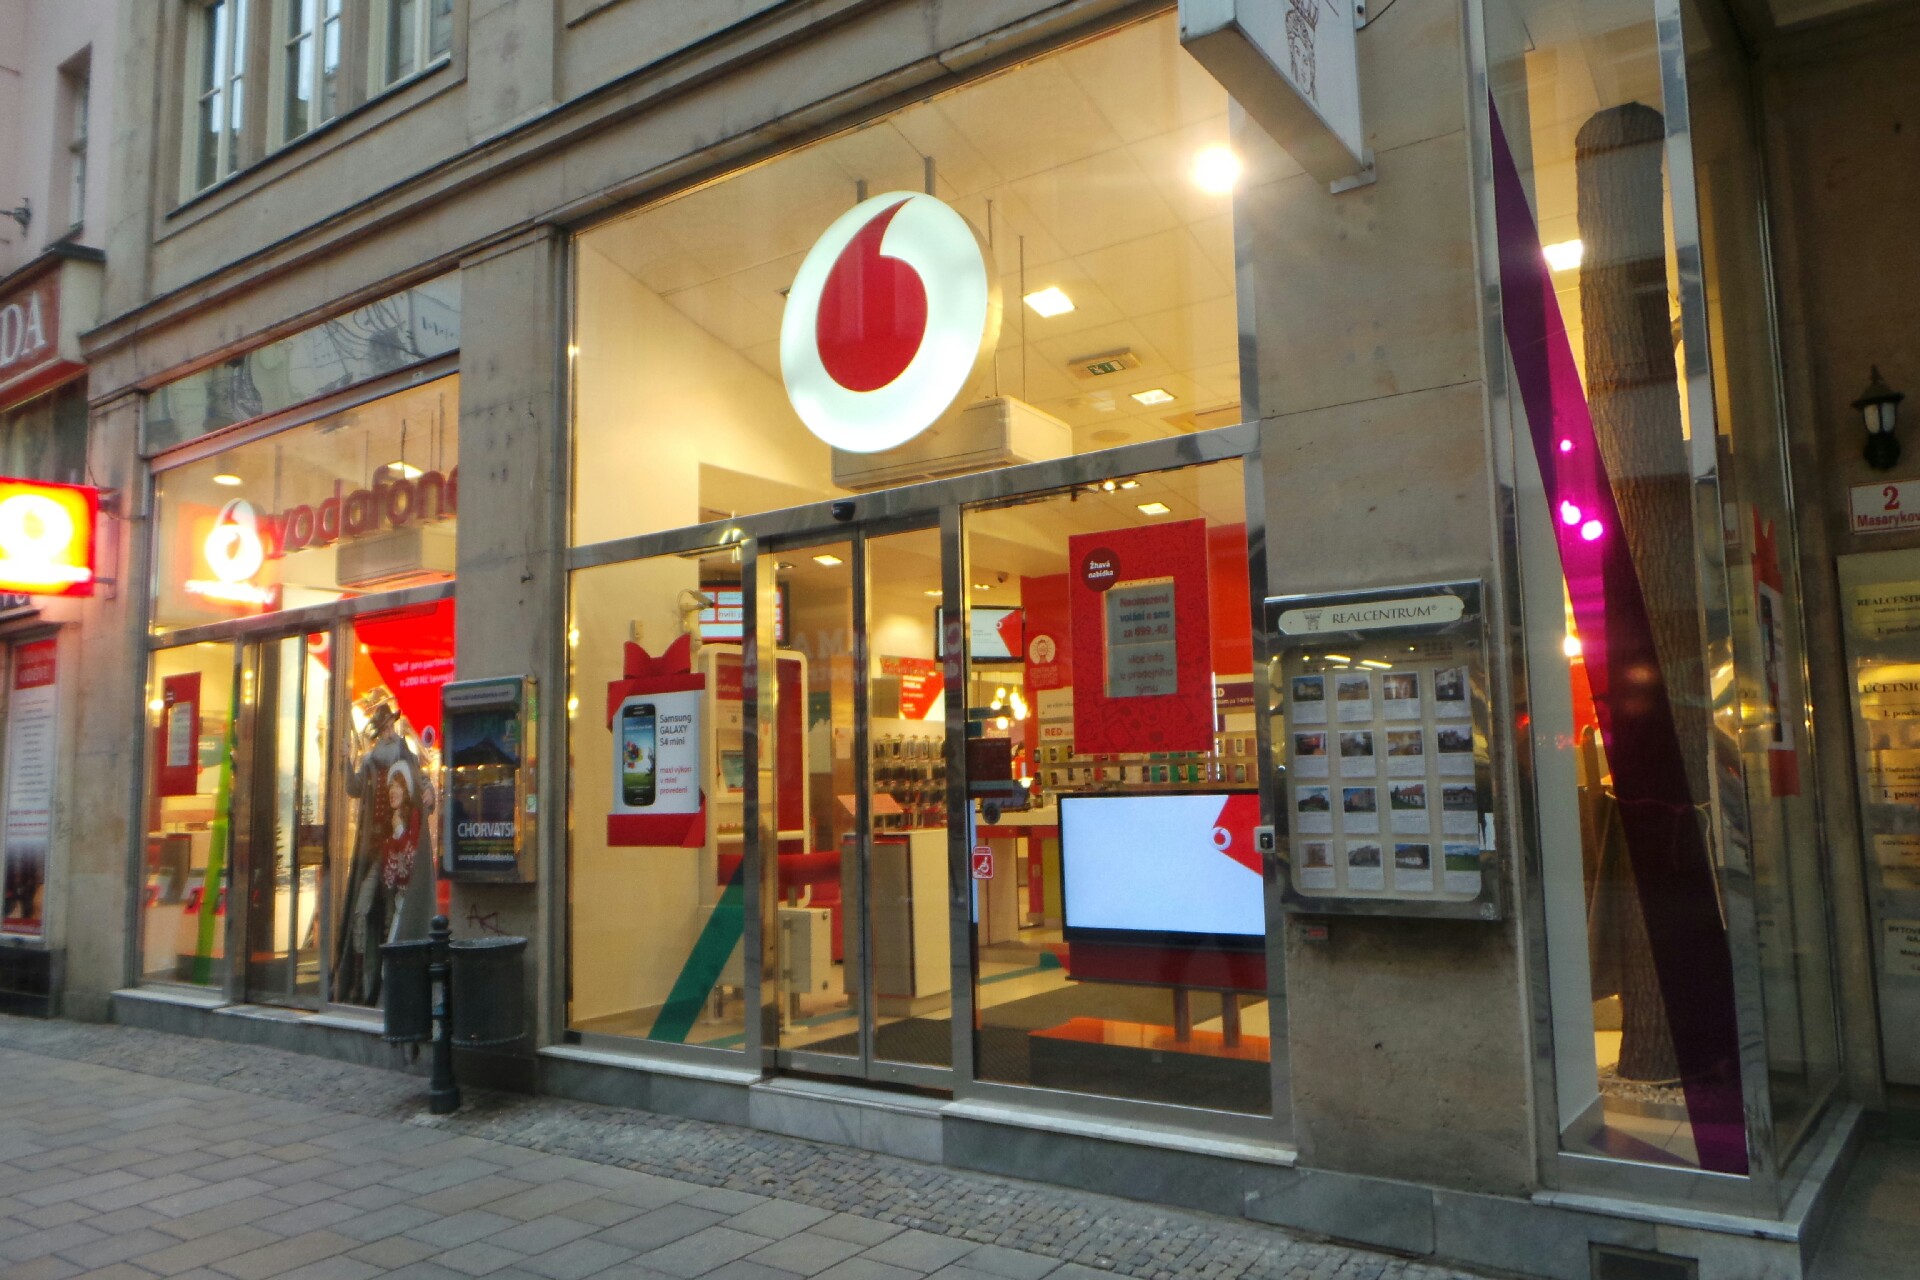 Co koupil Vodafone?